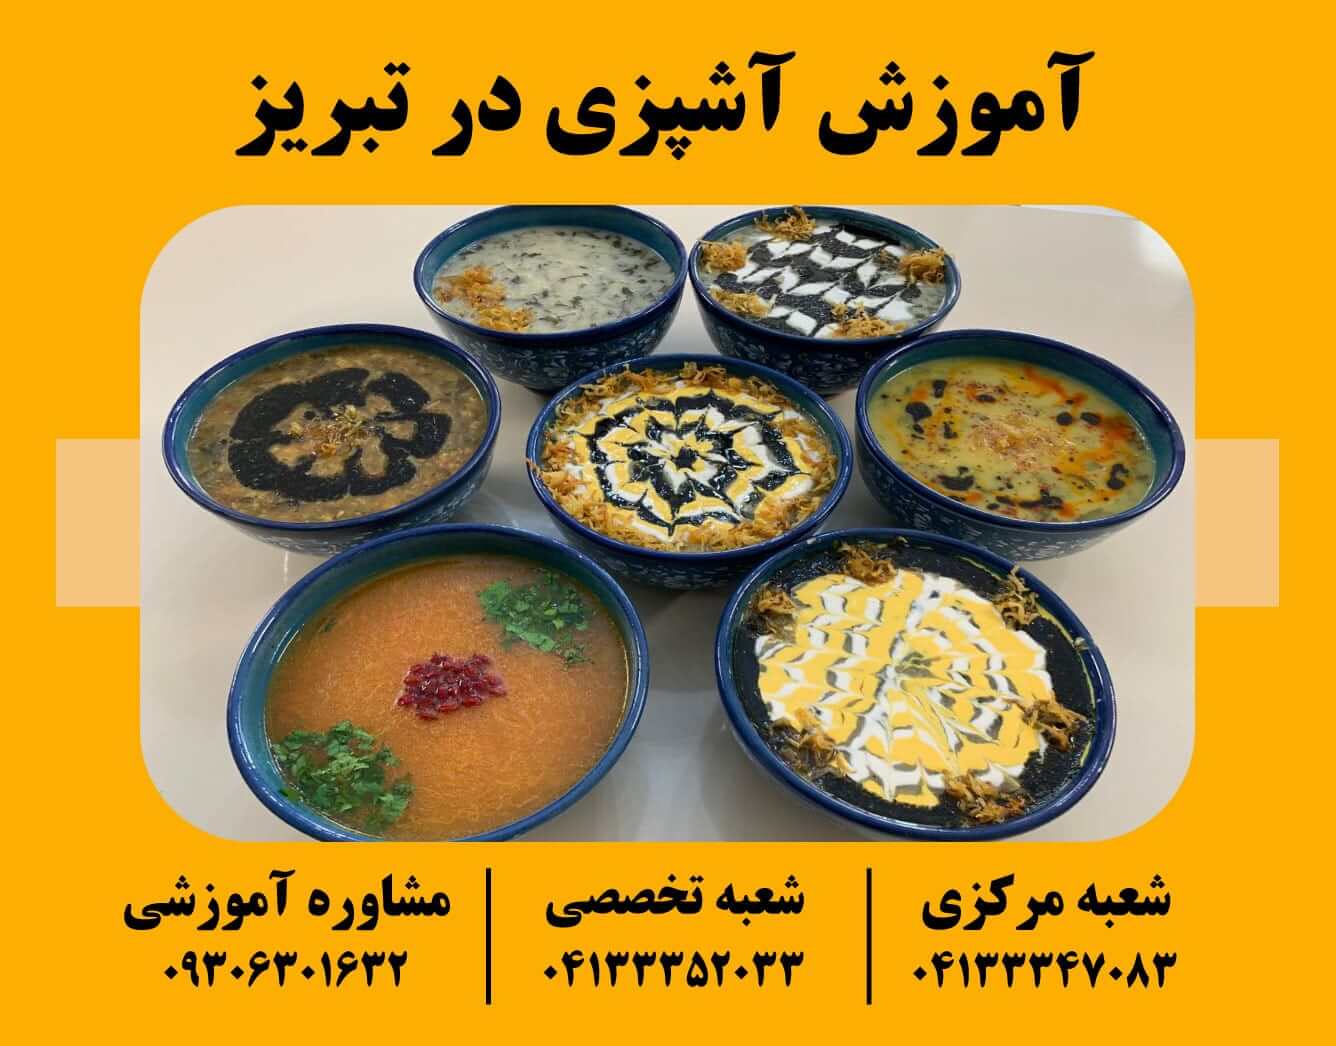 آموزش آشپزی سنتی در تبریز